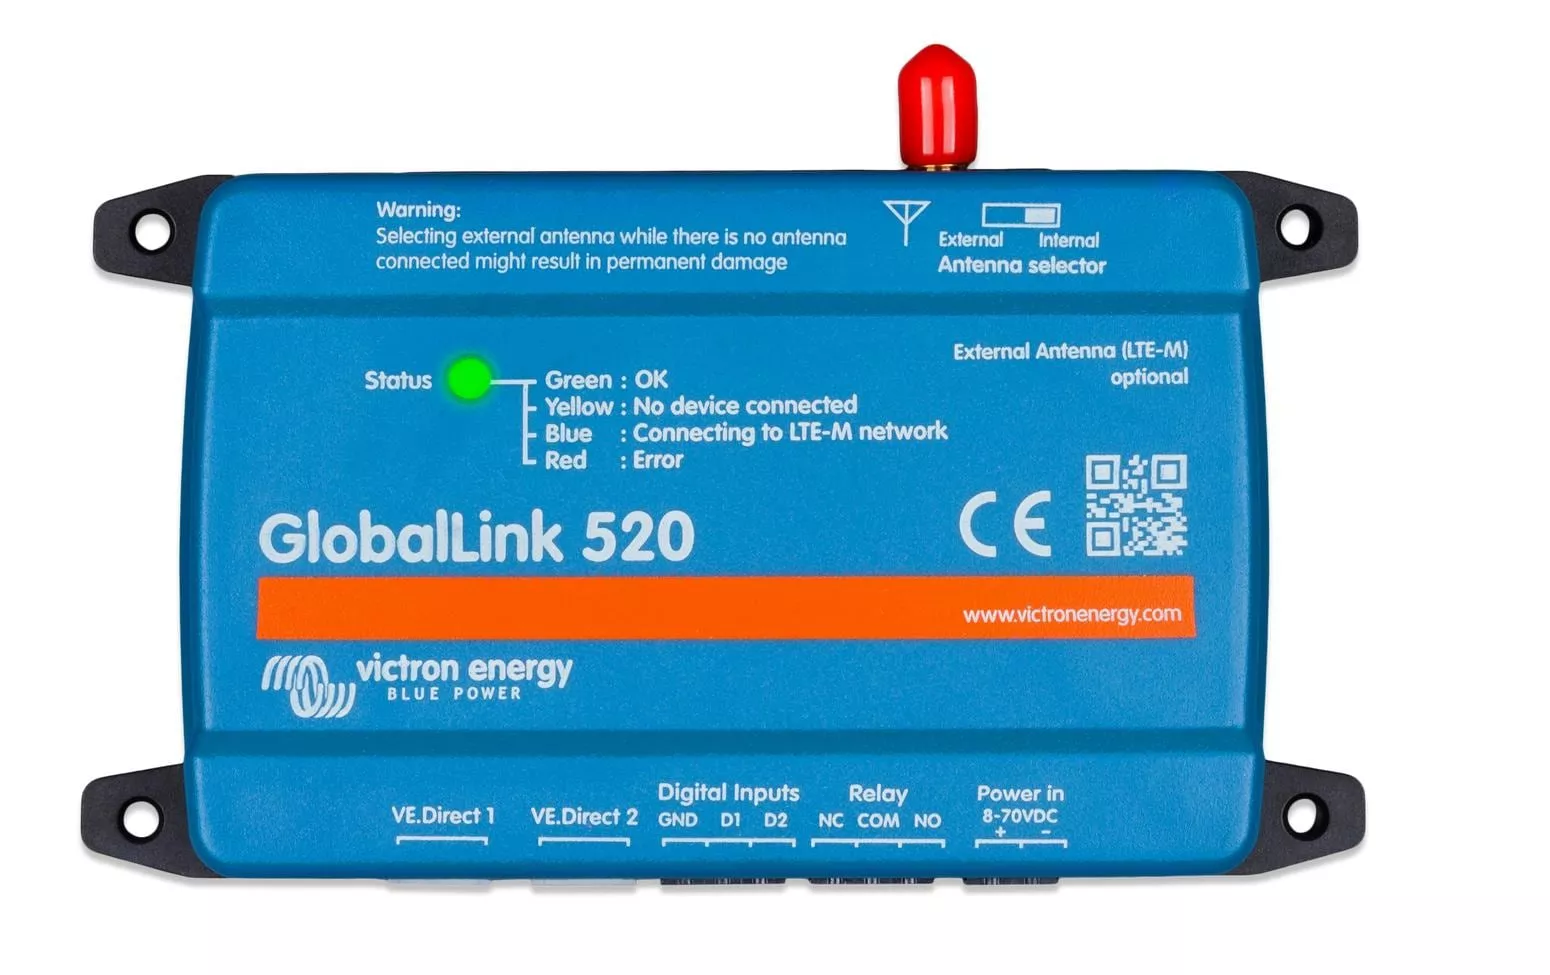 GlobalLink 520 4G/LTE-M